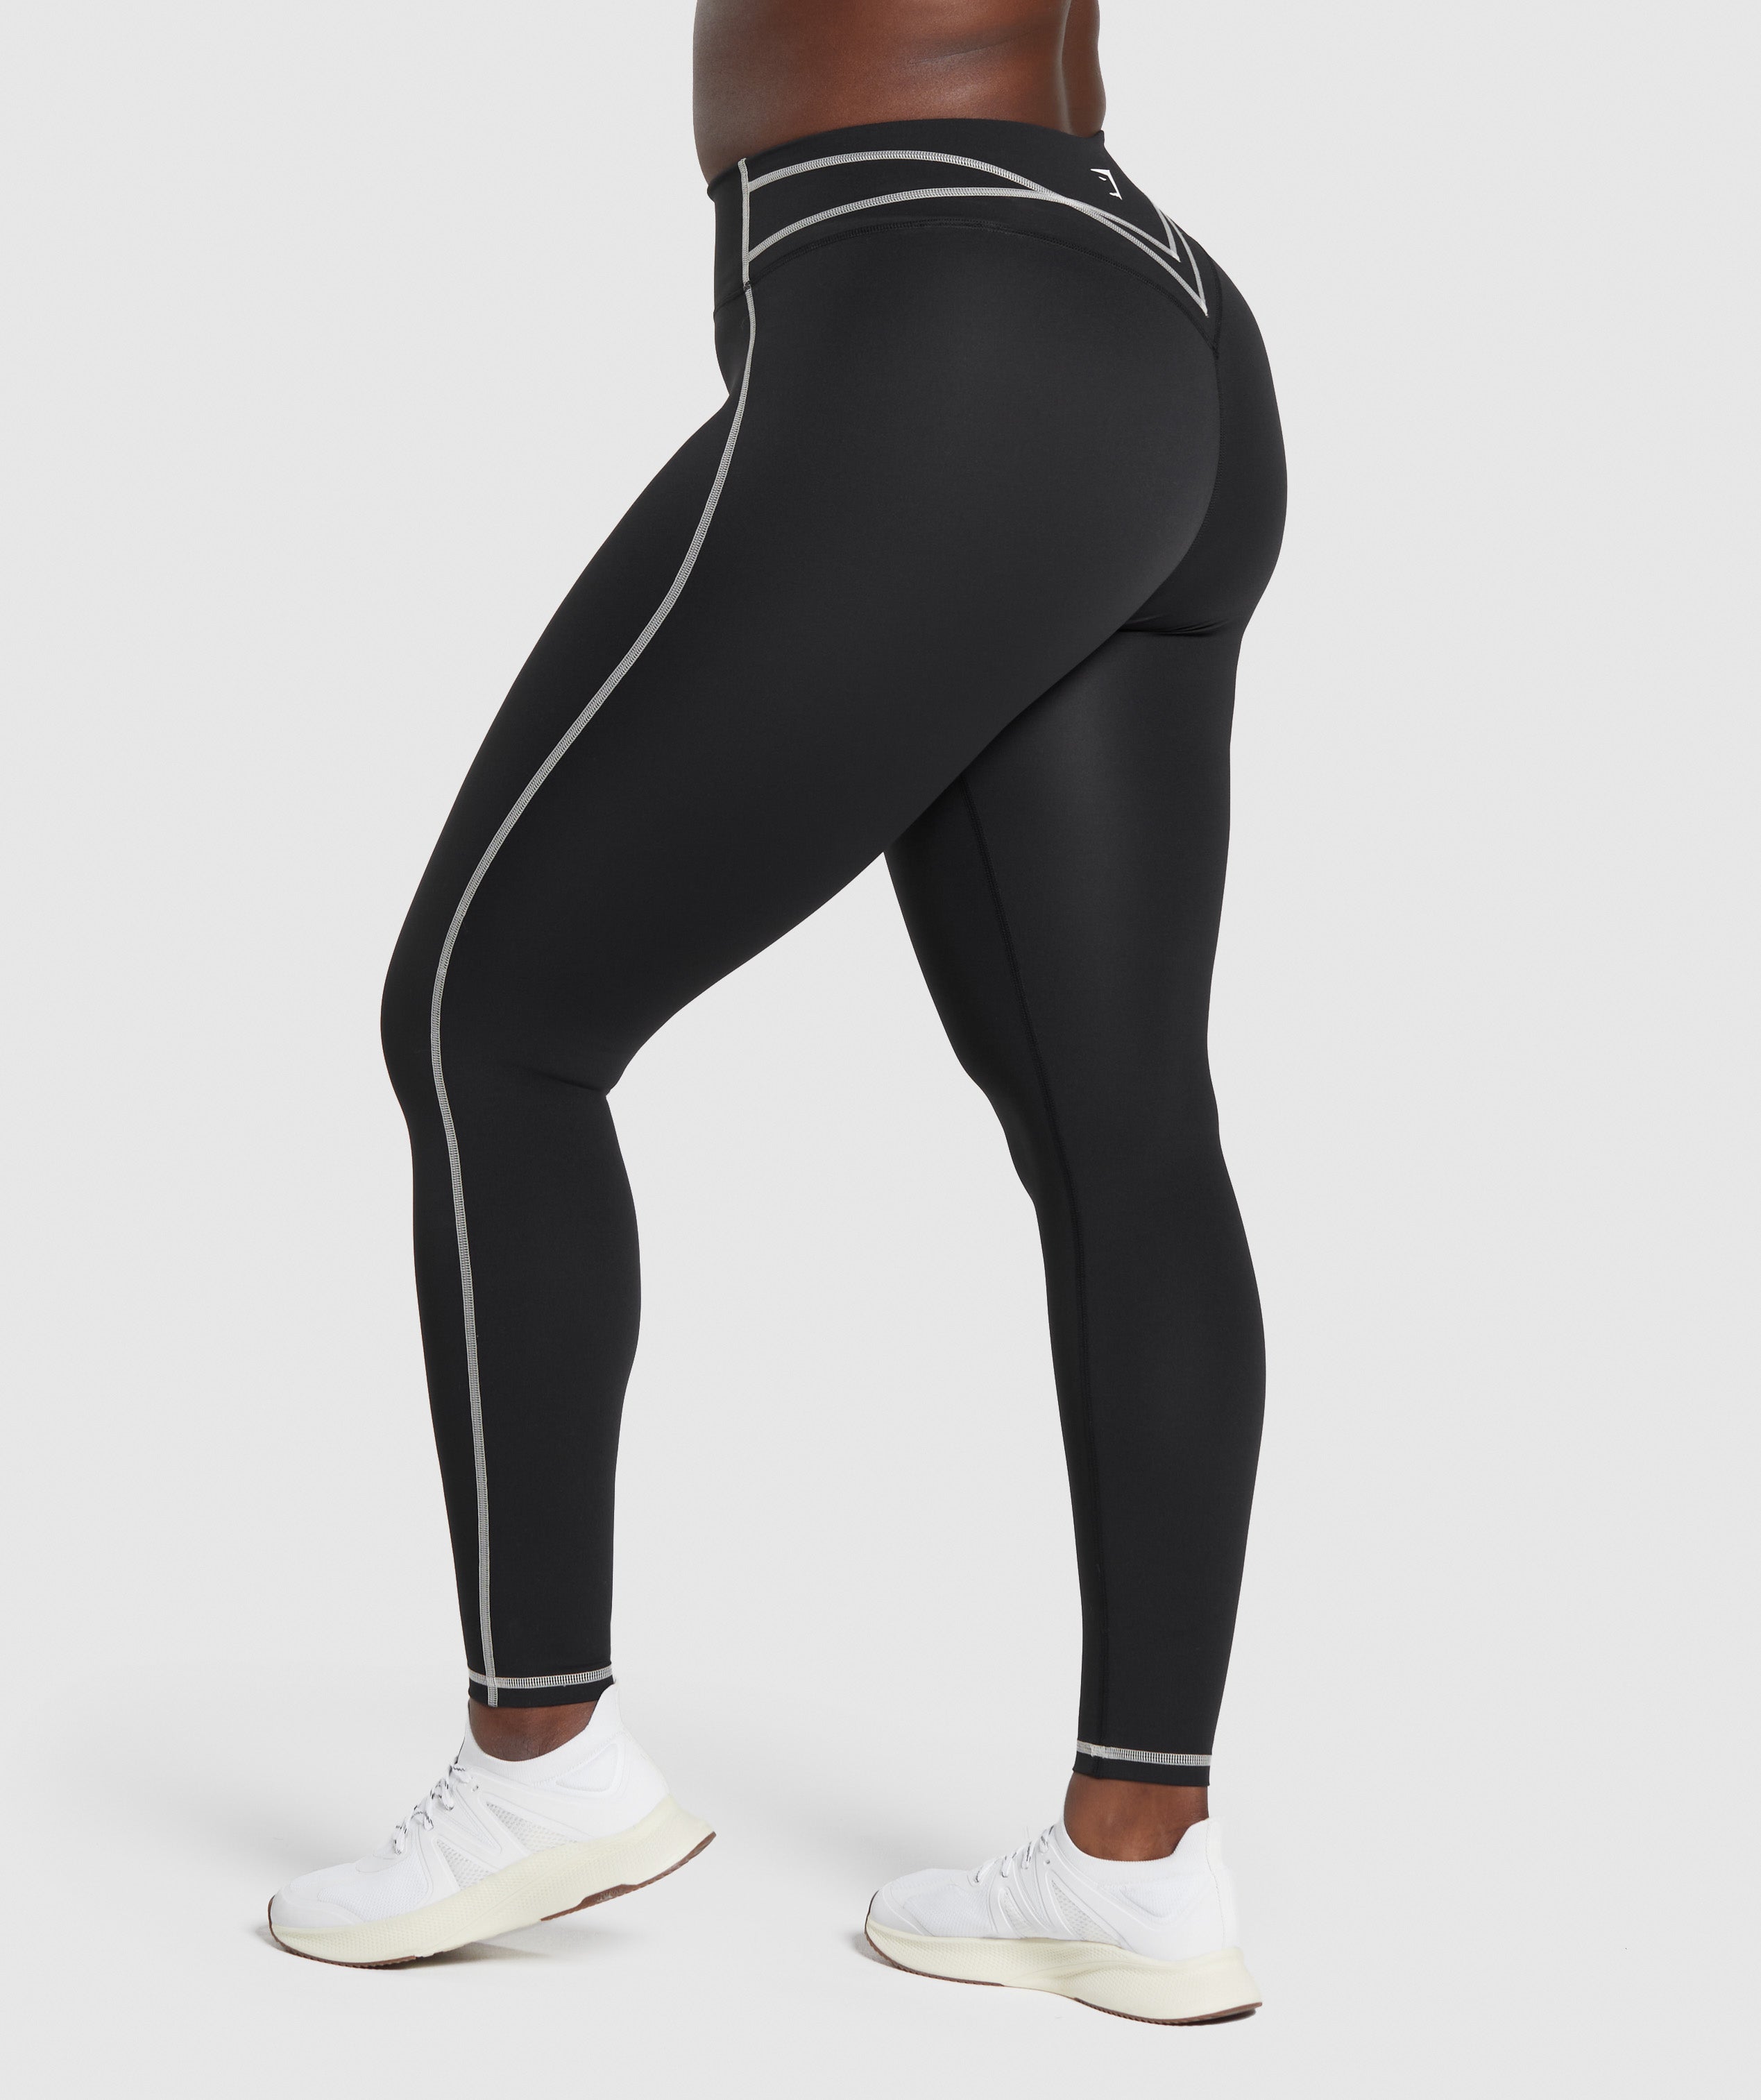 Camo 3 Stripe Fitness Leggings  Unique leggings, Squat proof leggings, Gym  wear